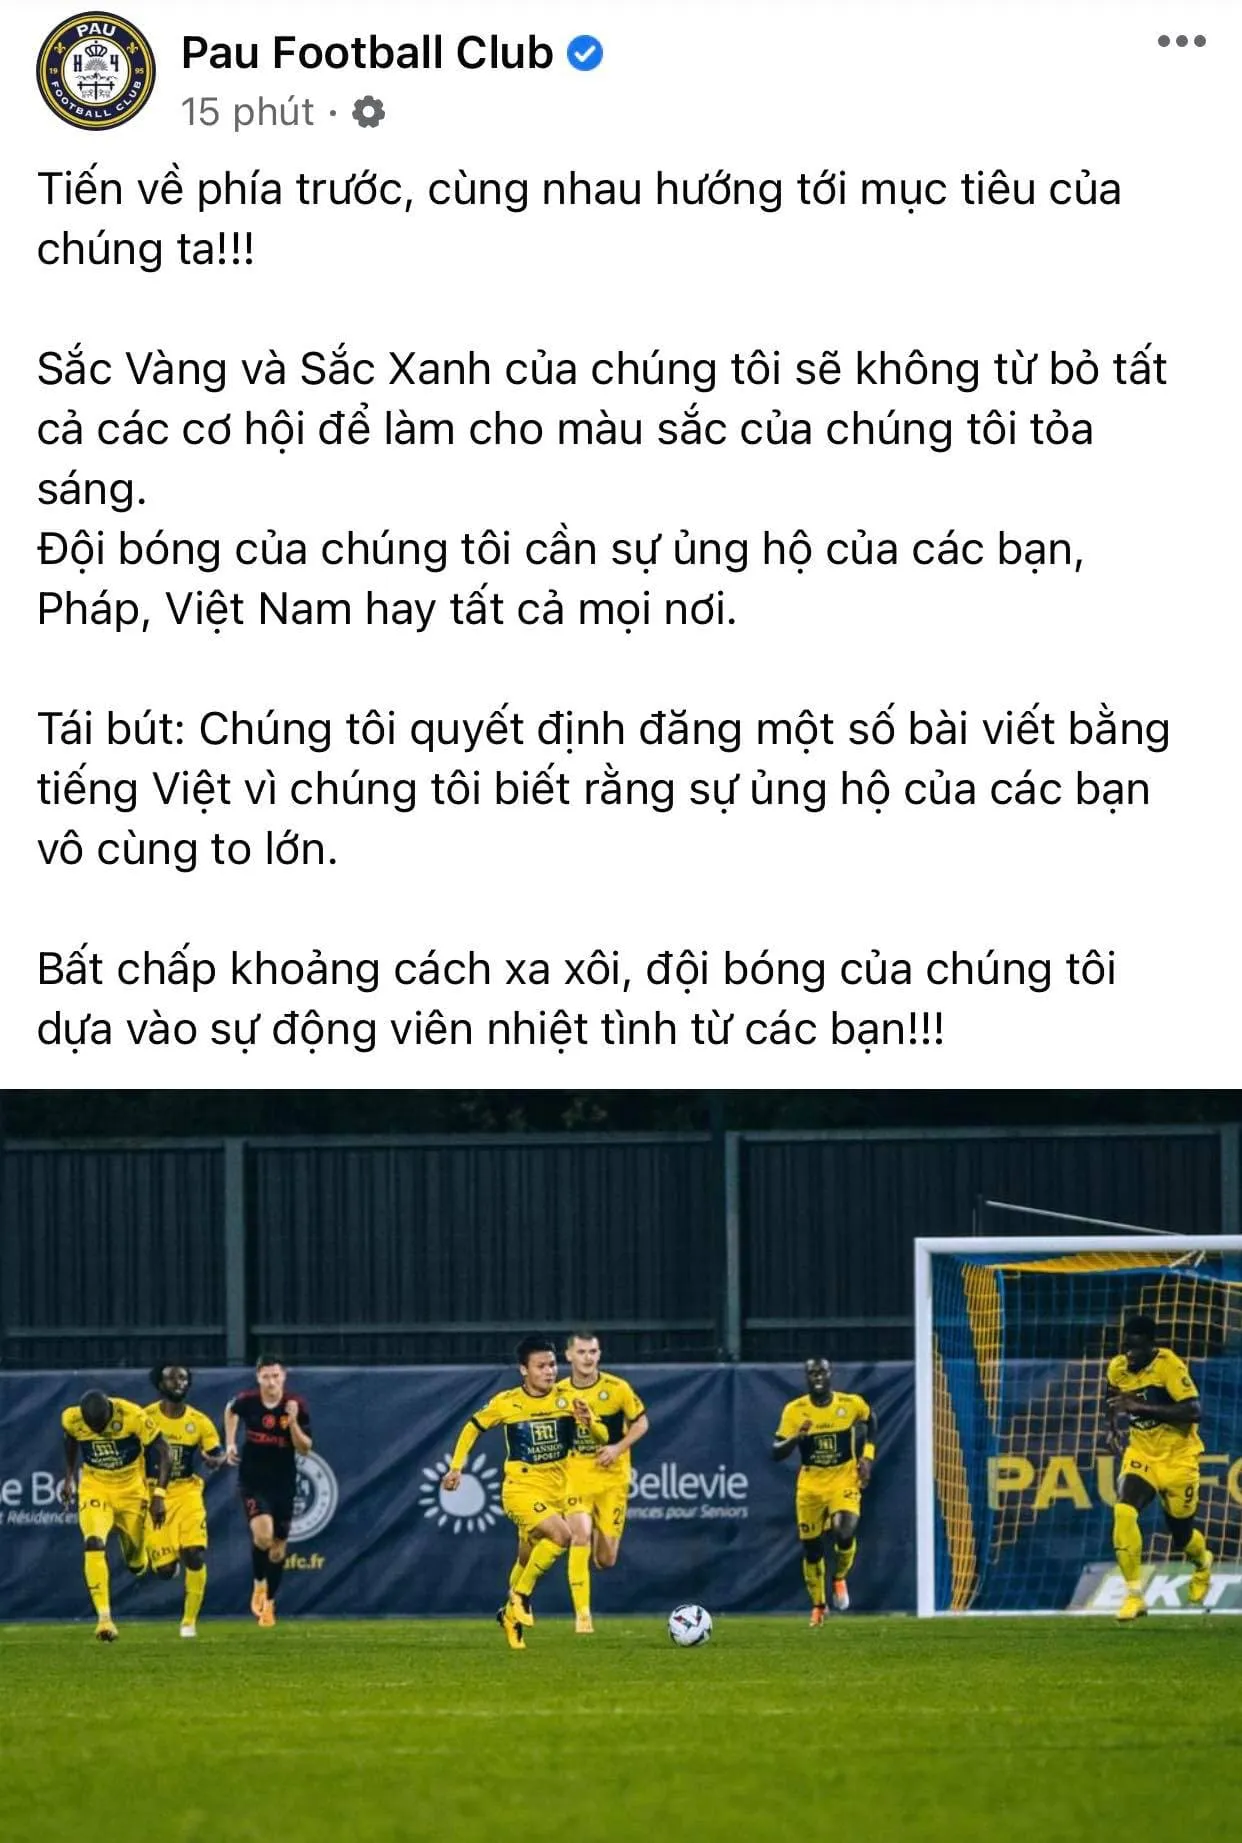 Pau FC lần đầu đăng bài viết bằng tiếng Việt - TP.HCM I tiếp tục đứng đầu Giải nữ VĐQG